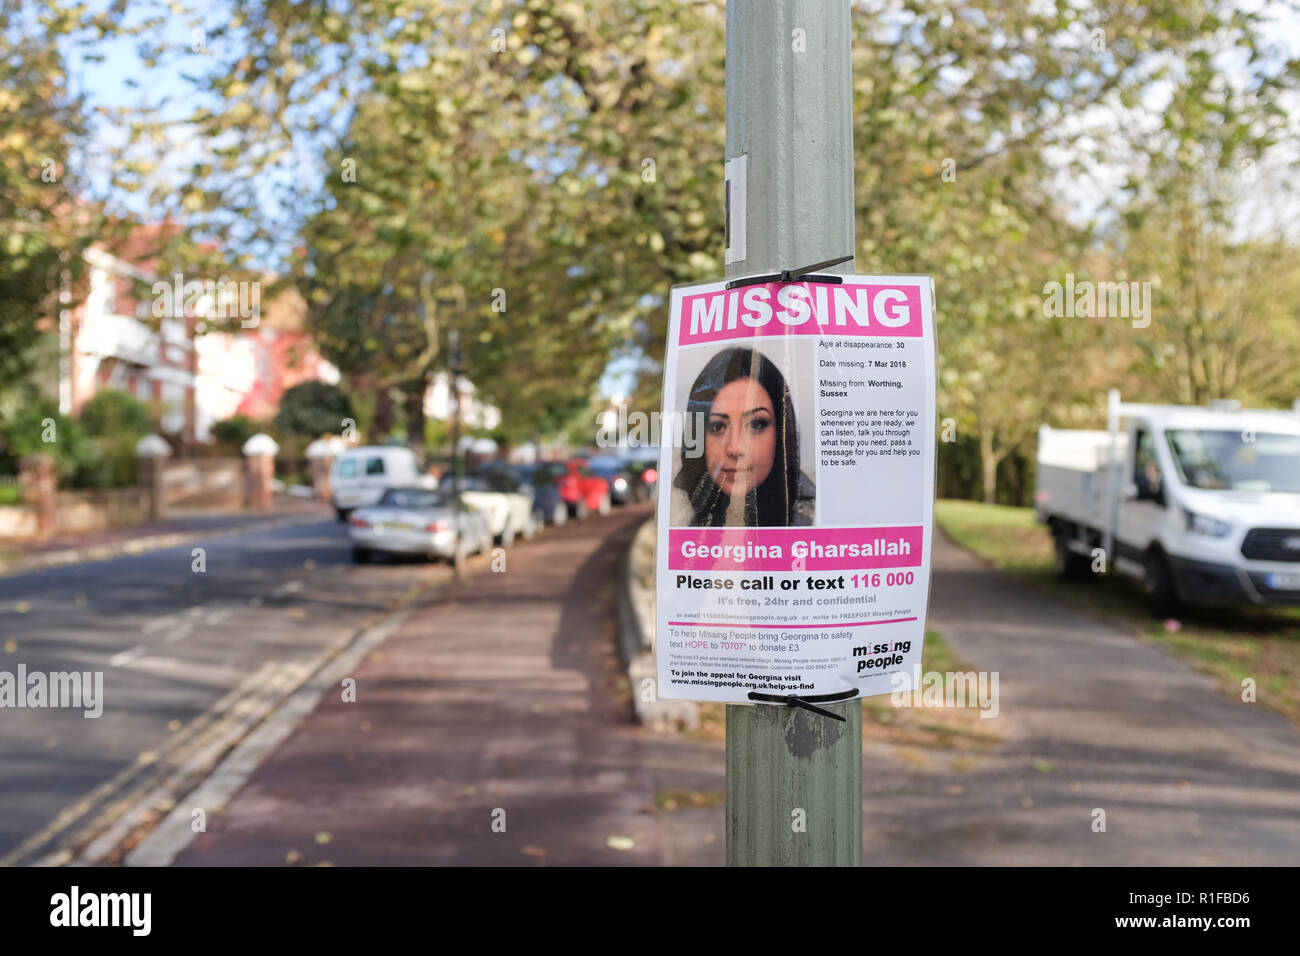 Poster dans le Queens Park Brighton pour personne disparue Georgina Gharsallah qui n'a pas été vu depuis mars 2018 lorsqu'elle a disparu de son domicile de Wor Banque D'Images